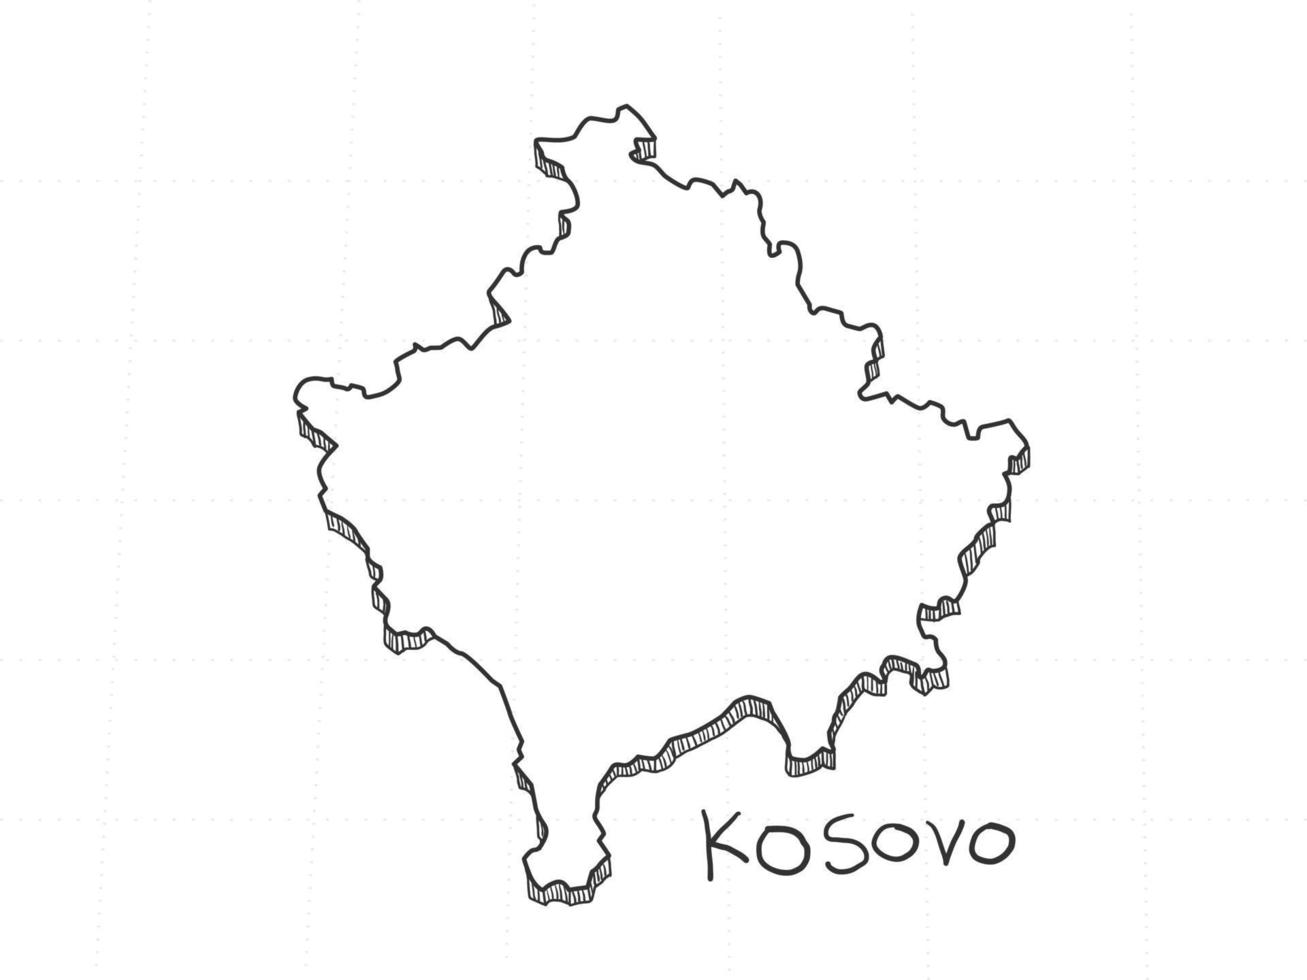 mão desenhada do mapa 3d do Kosovo em fundo branco. vetor